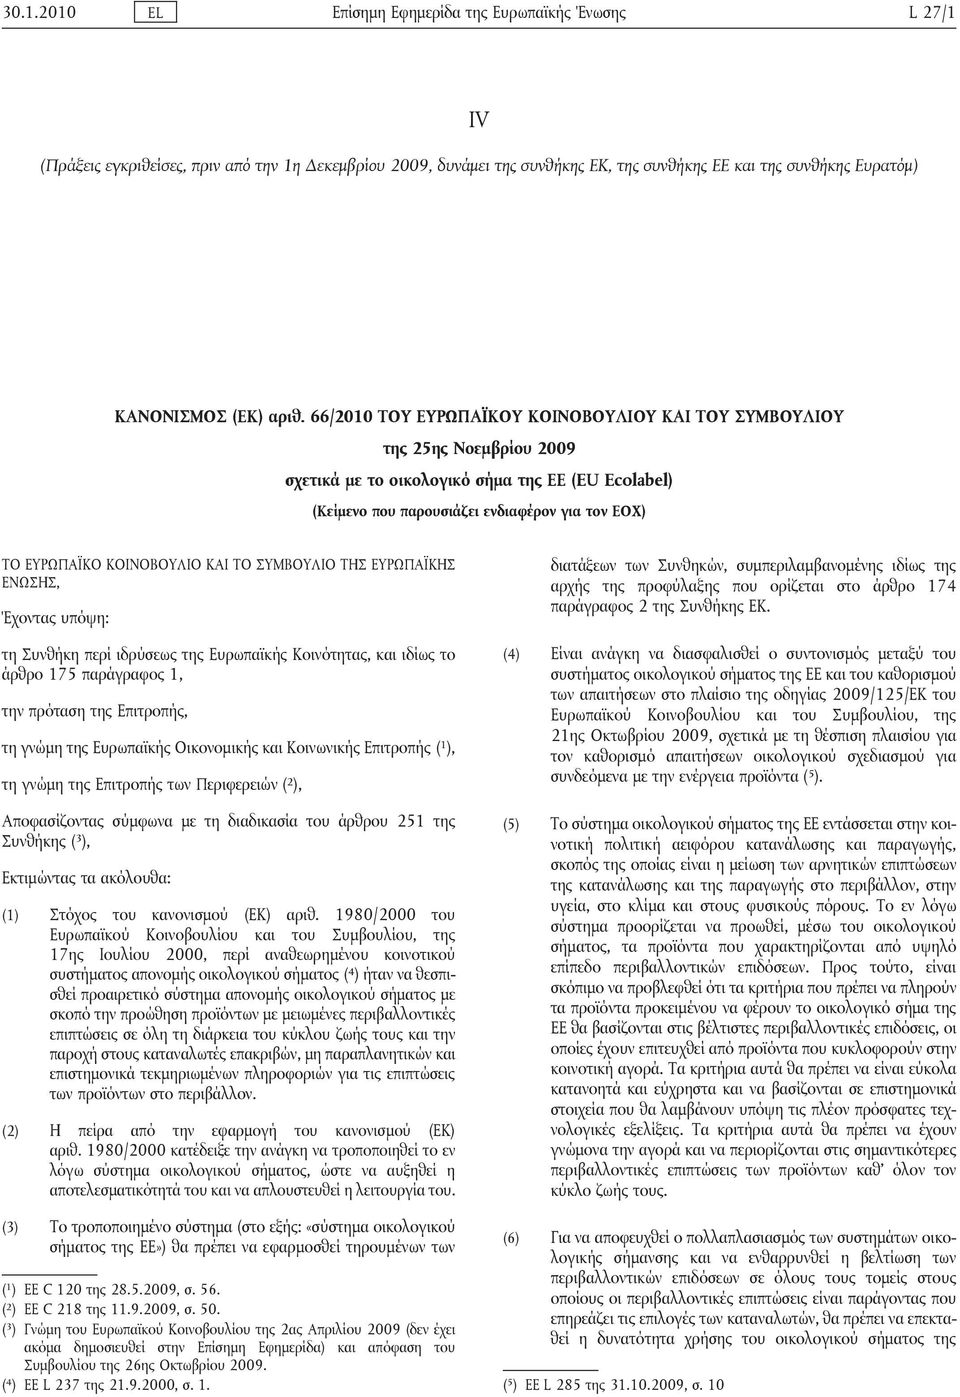 ΚΟΙΝΟΒΟΥΛΙΟ ΚΑΙ ΤΟ ΣΥΜΒΟΥΛΙΟ ΤΗΣ ΕΥΡΩΠΑΪΚΗΣ ΕΝΩΣΗΣ, Έχοντας υπόψη: τη Συνθήκη περί ιδρύσεως της Ευρωπαϊκής Κοινότητας, και ιδίως το άρθρο 175 παράγραφος 1, την πρόταση της Επιτροπής, τη γνώμη της